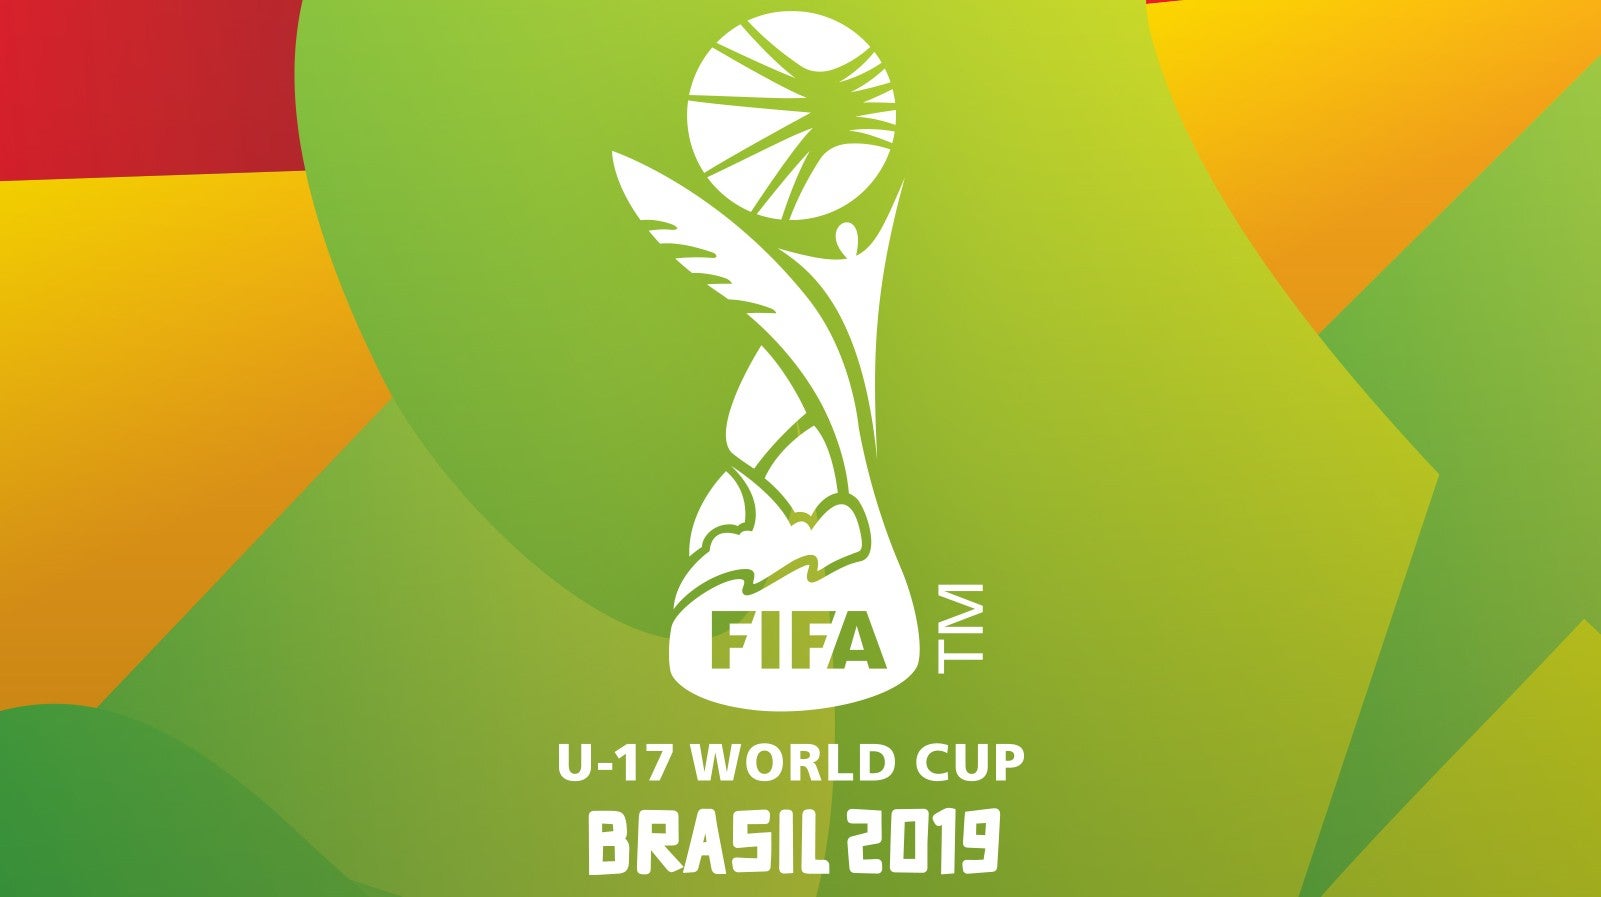 FIFA Campeonato do Mundo Sub-17